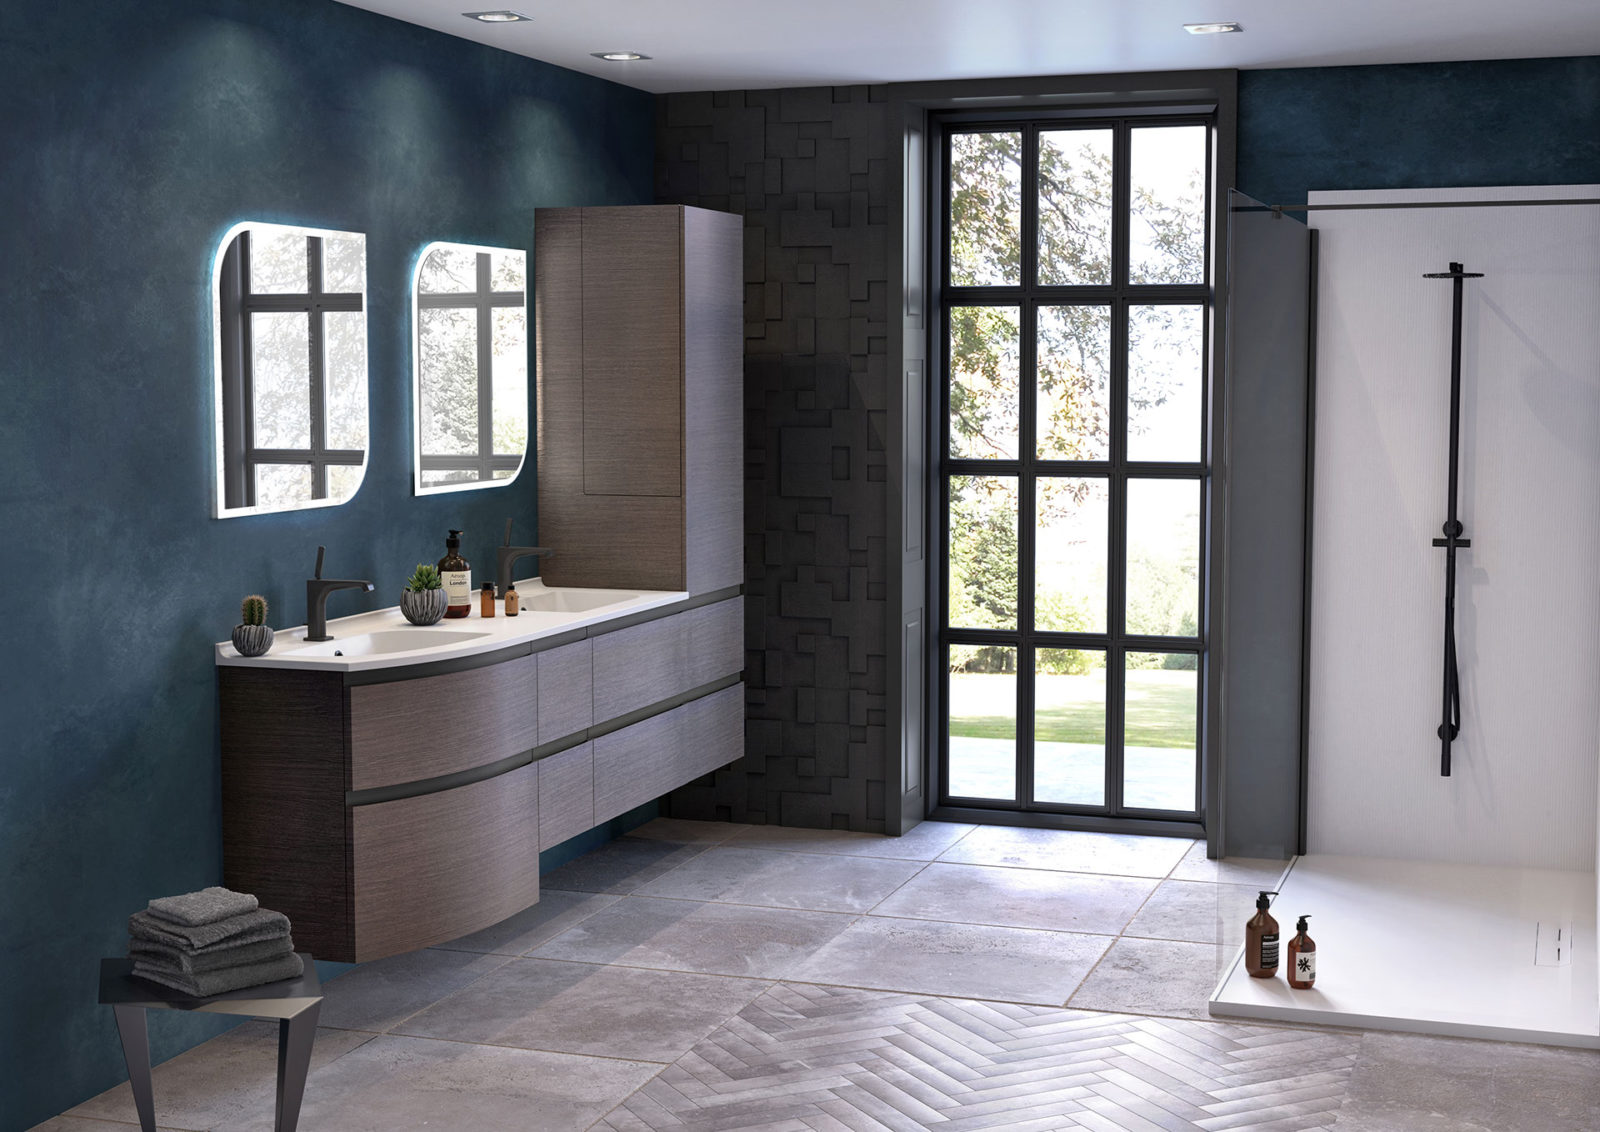 Meuble salle de bains double vasque bois foncé et noir, 6 tiroirs, colonne de salle de bains, miroir et douche blanche